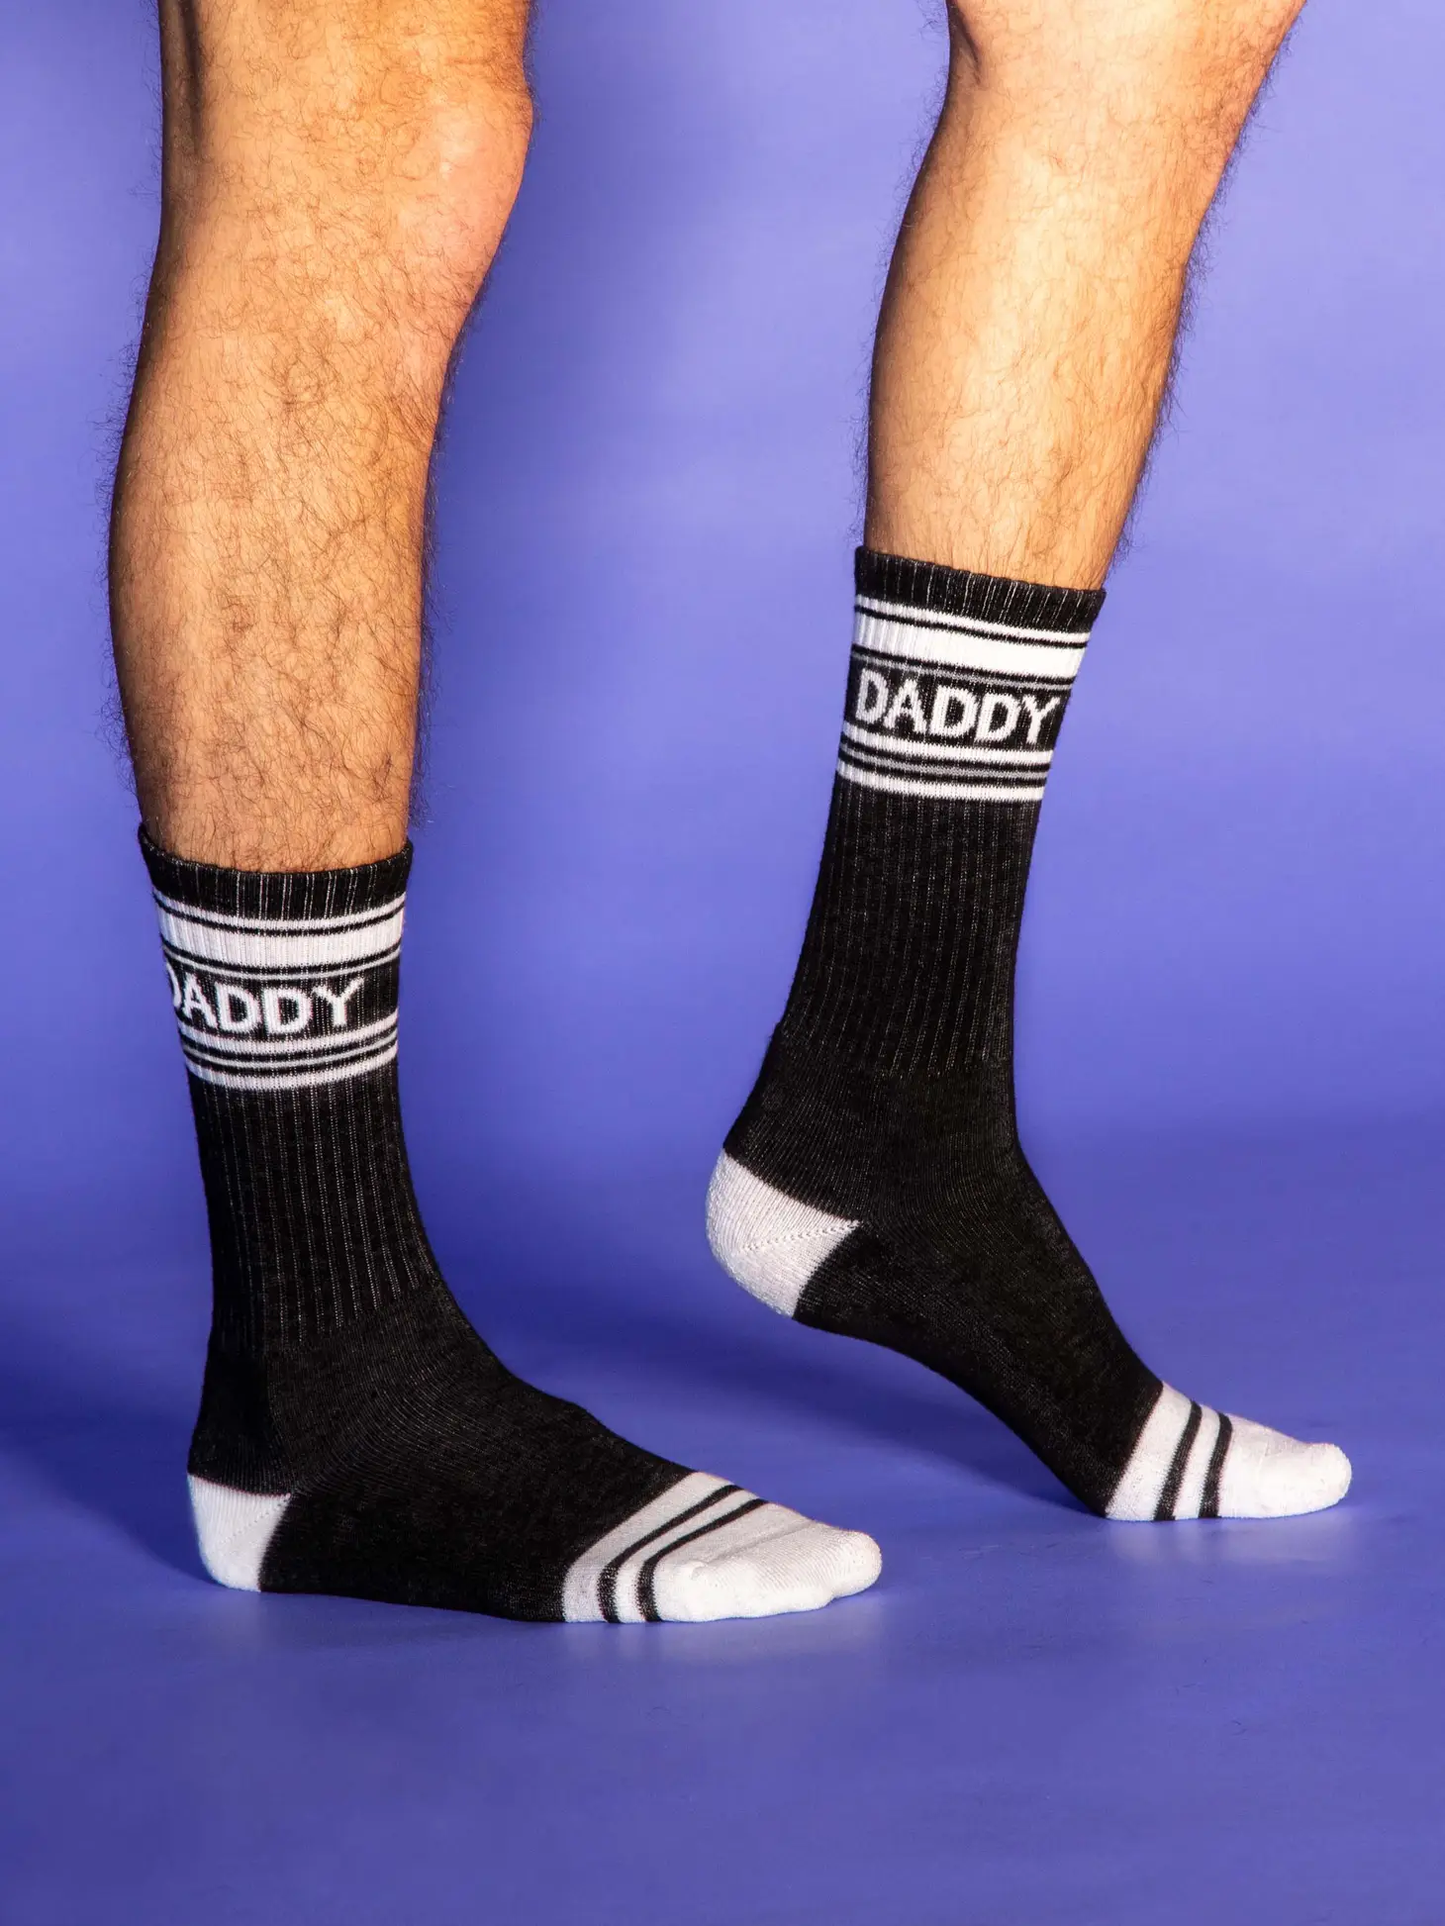 Daddy Gym Crew Socks